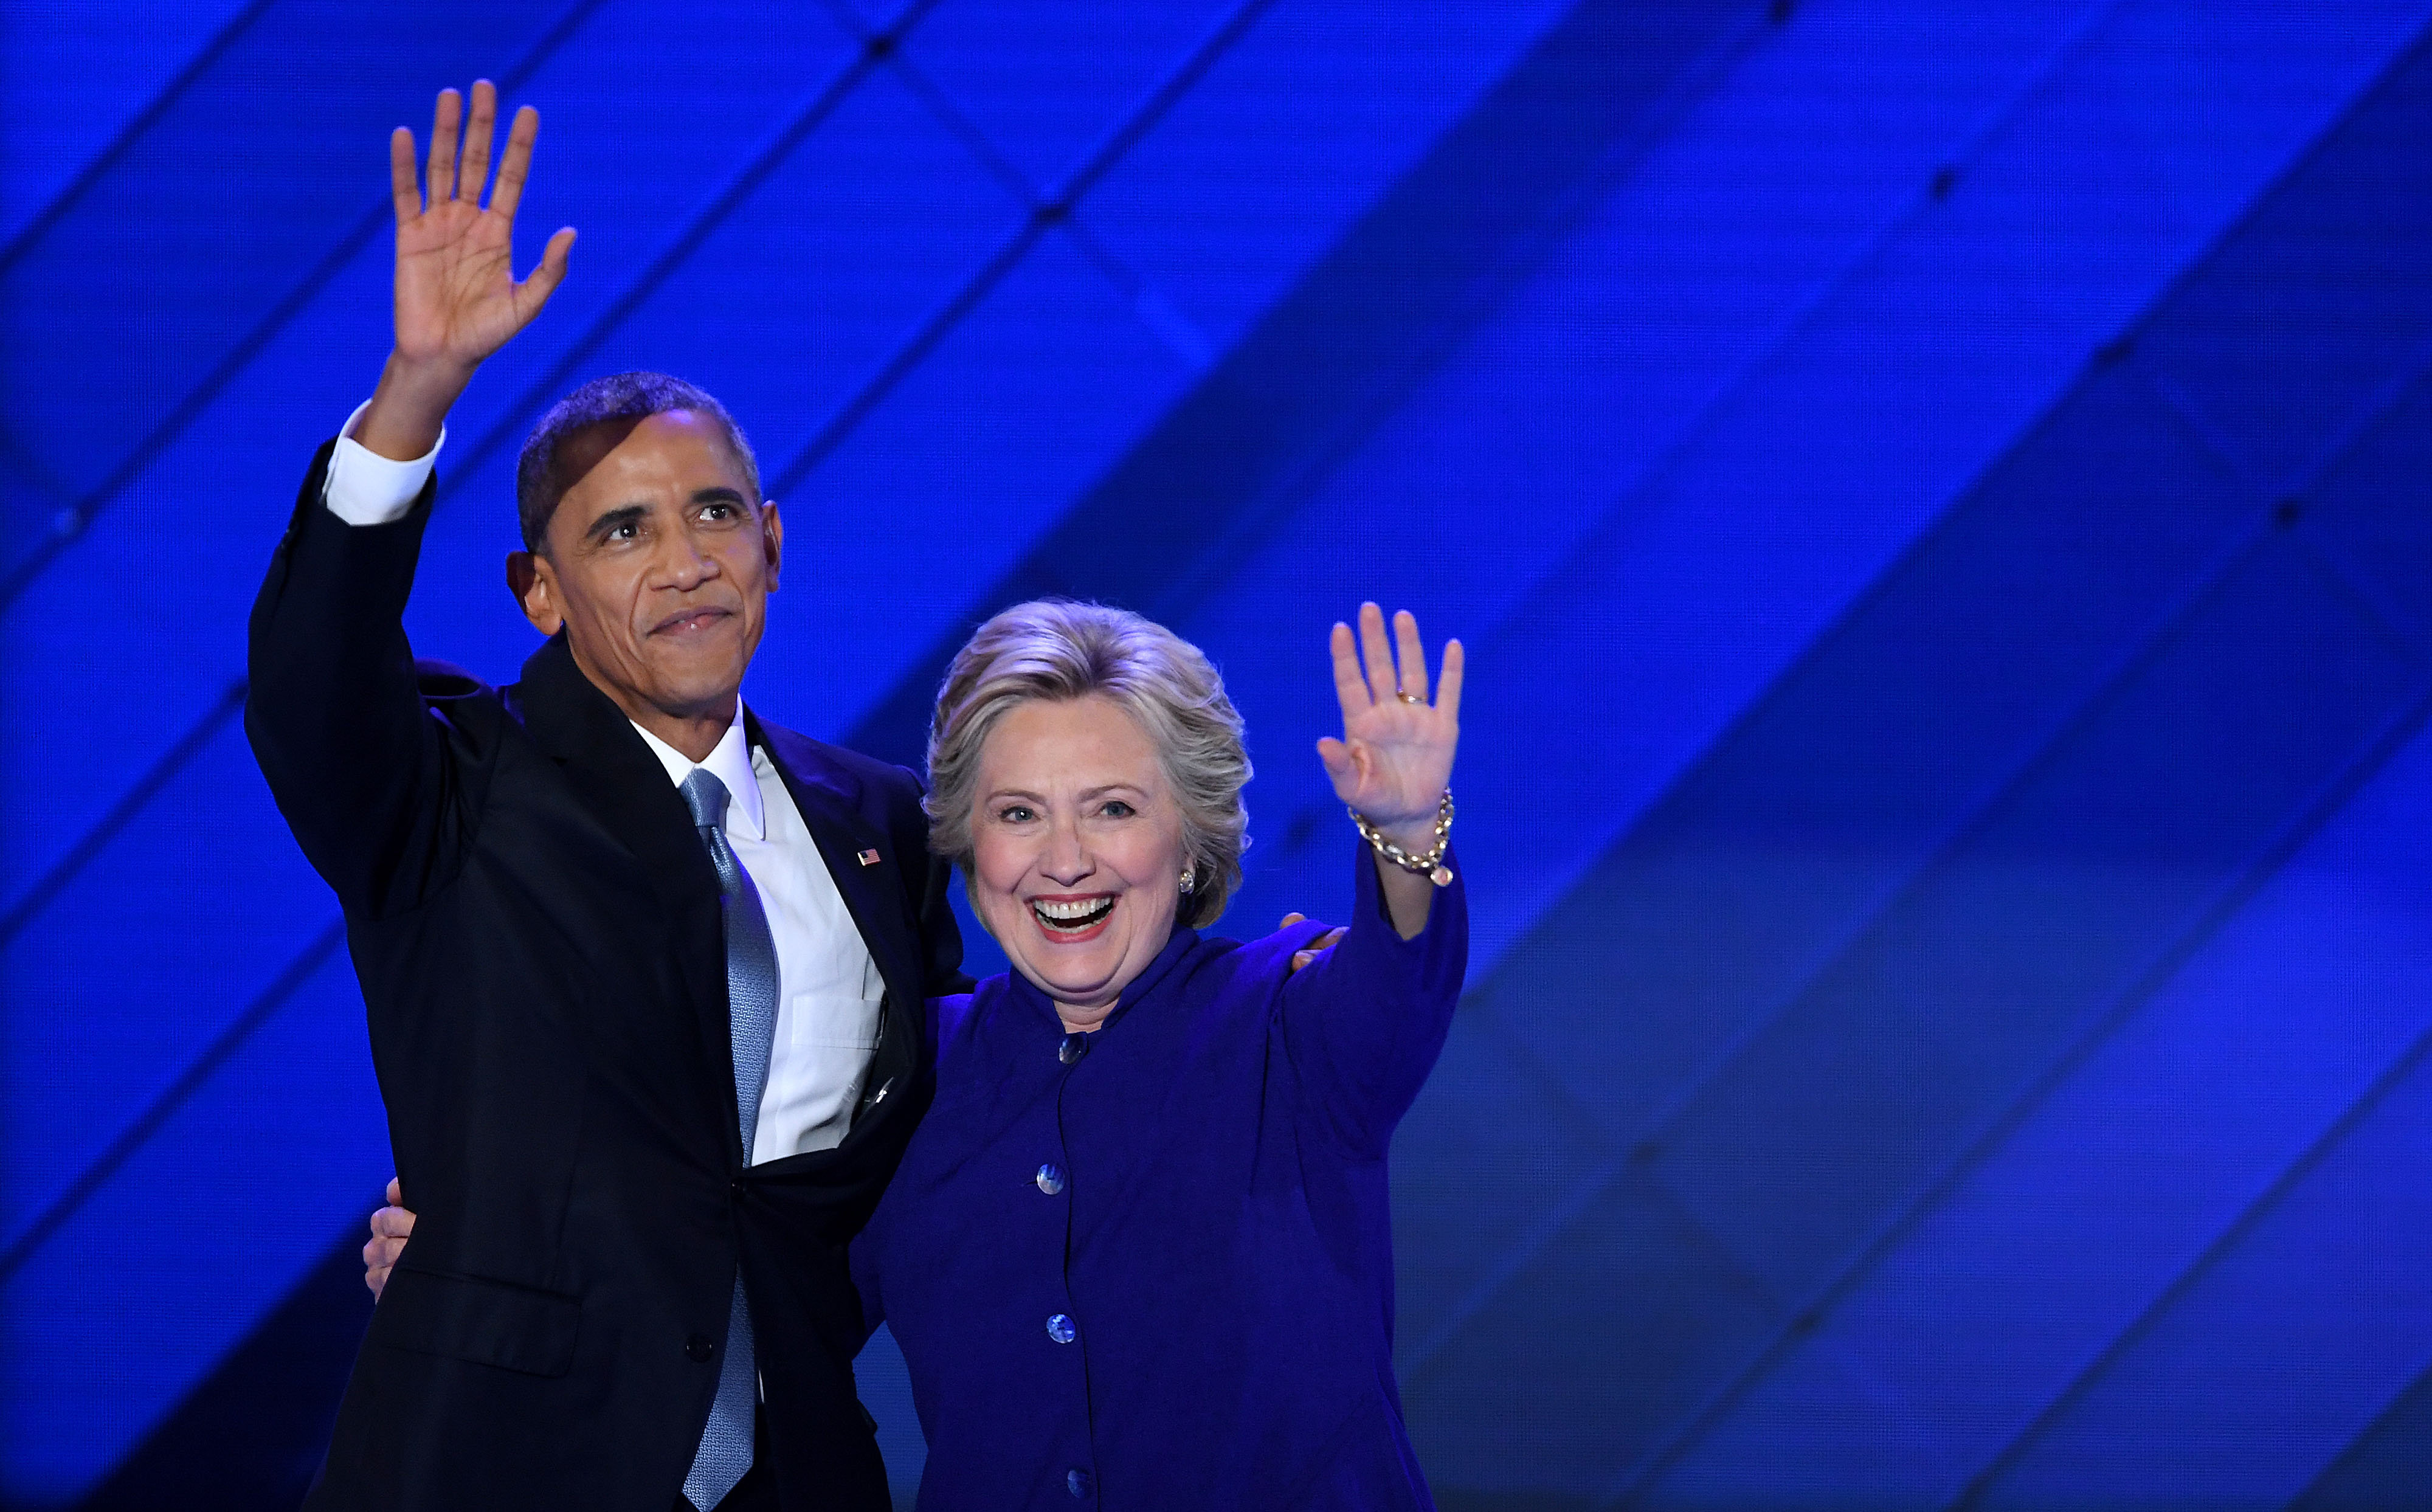 Obama exhorte l'Amérique à porter "Hillary" vers la victoire